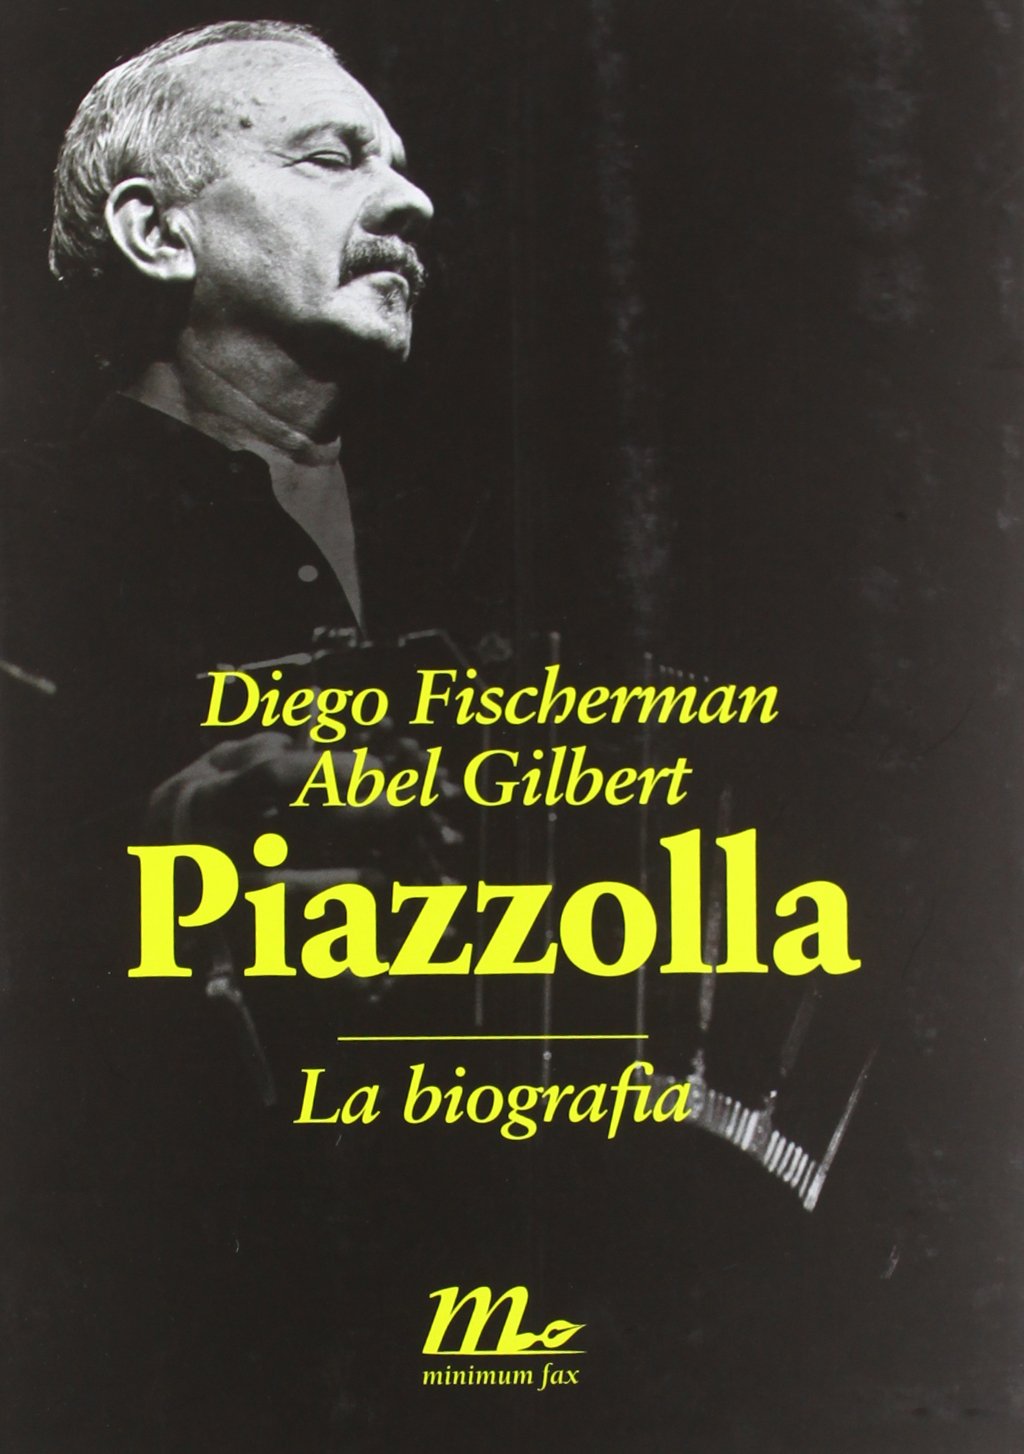 100 anni di Astor Piazzolla - biografia